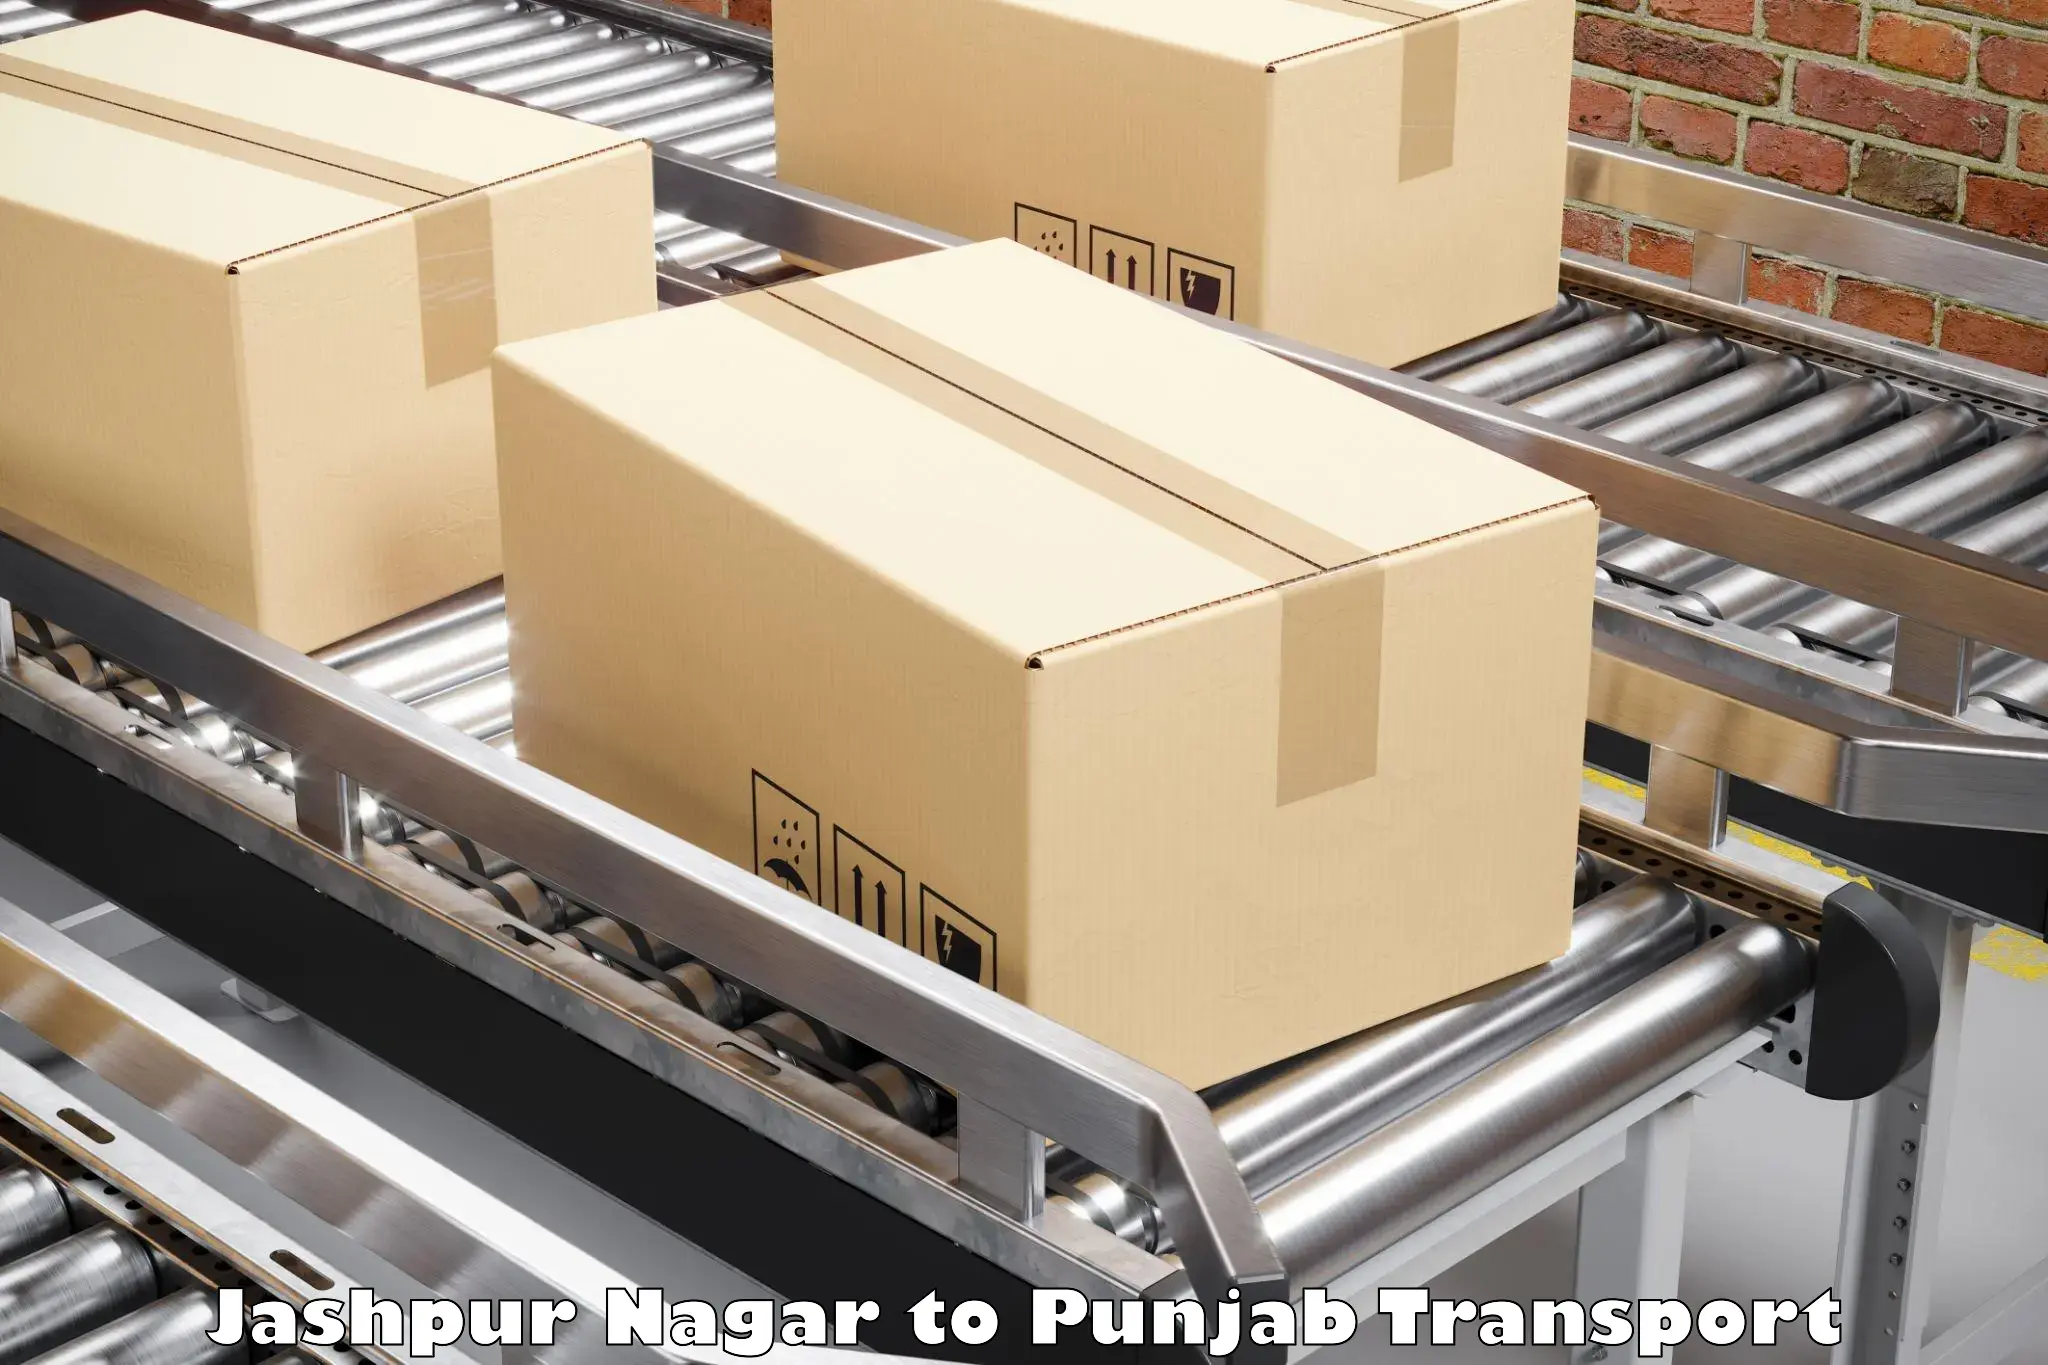 Shipping partner Jashpur Nagar to Sangrur